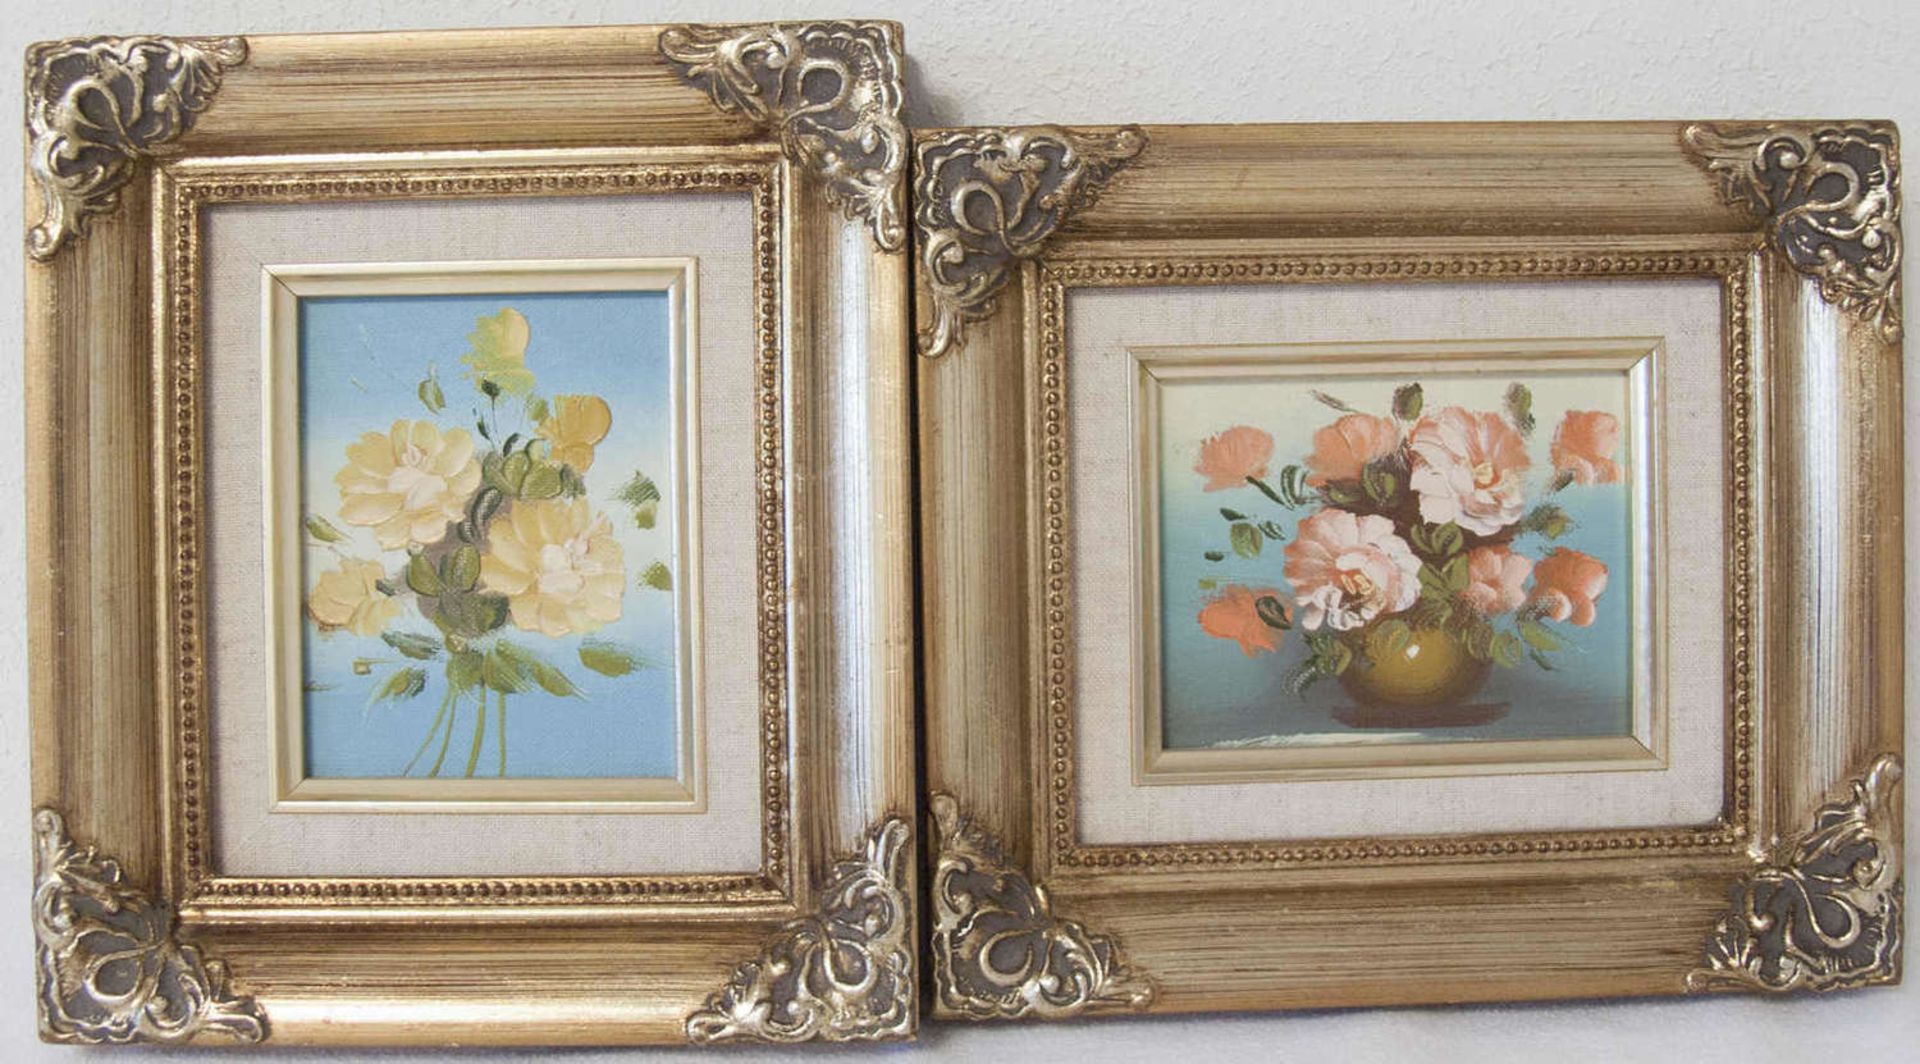 Zwei Ölbilder "Blumen - Stillleben". Öl auf Leinwand. Im Prunkrahmen. Maße: ca 22 cm x ca. 20 cm.Two